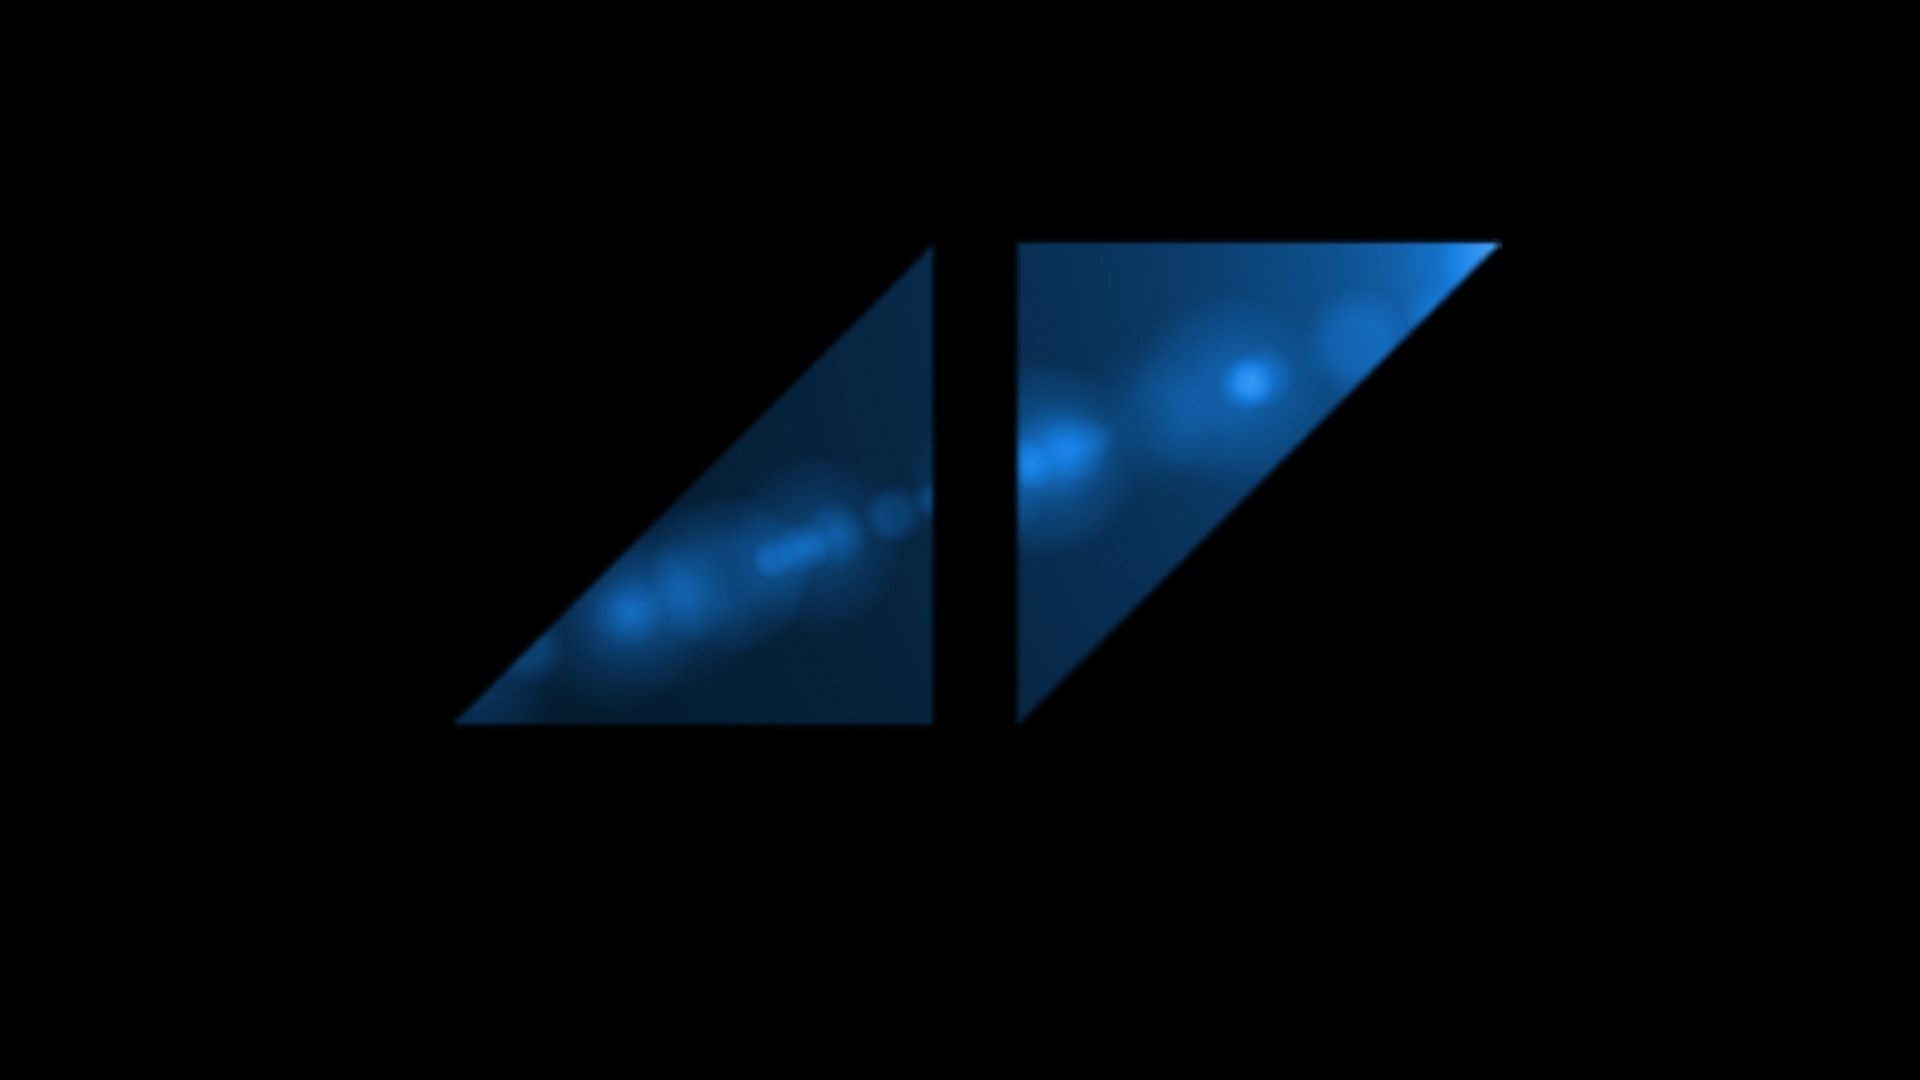 Avicii Symbol. Avicii, Avicii symbol, Logo wallpaper hd